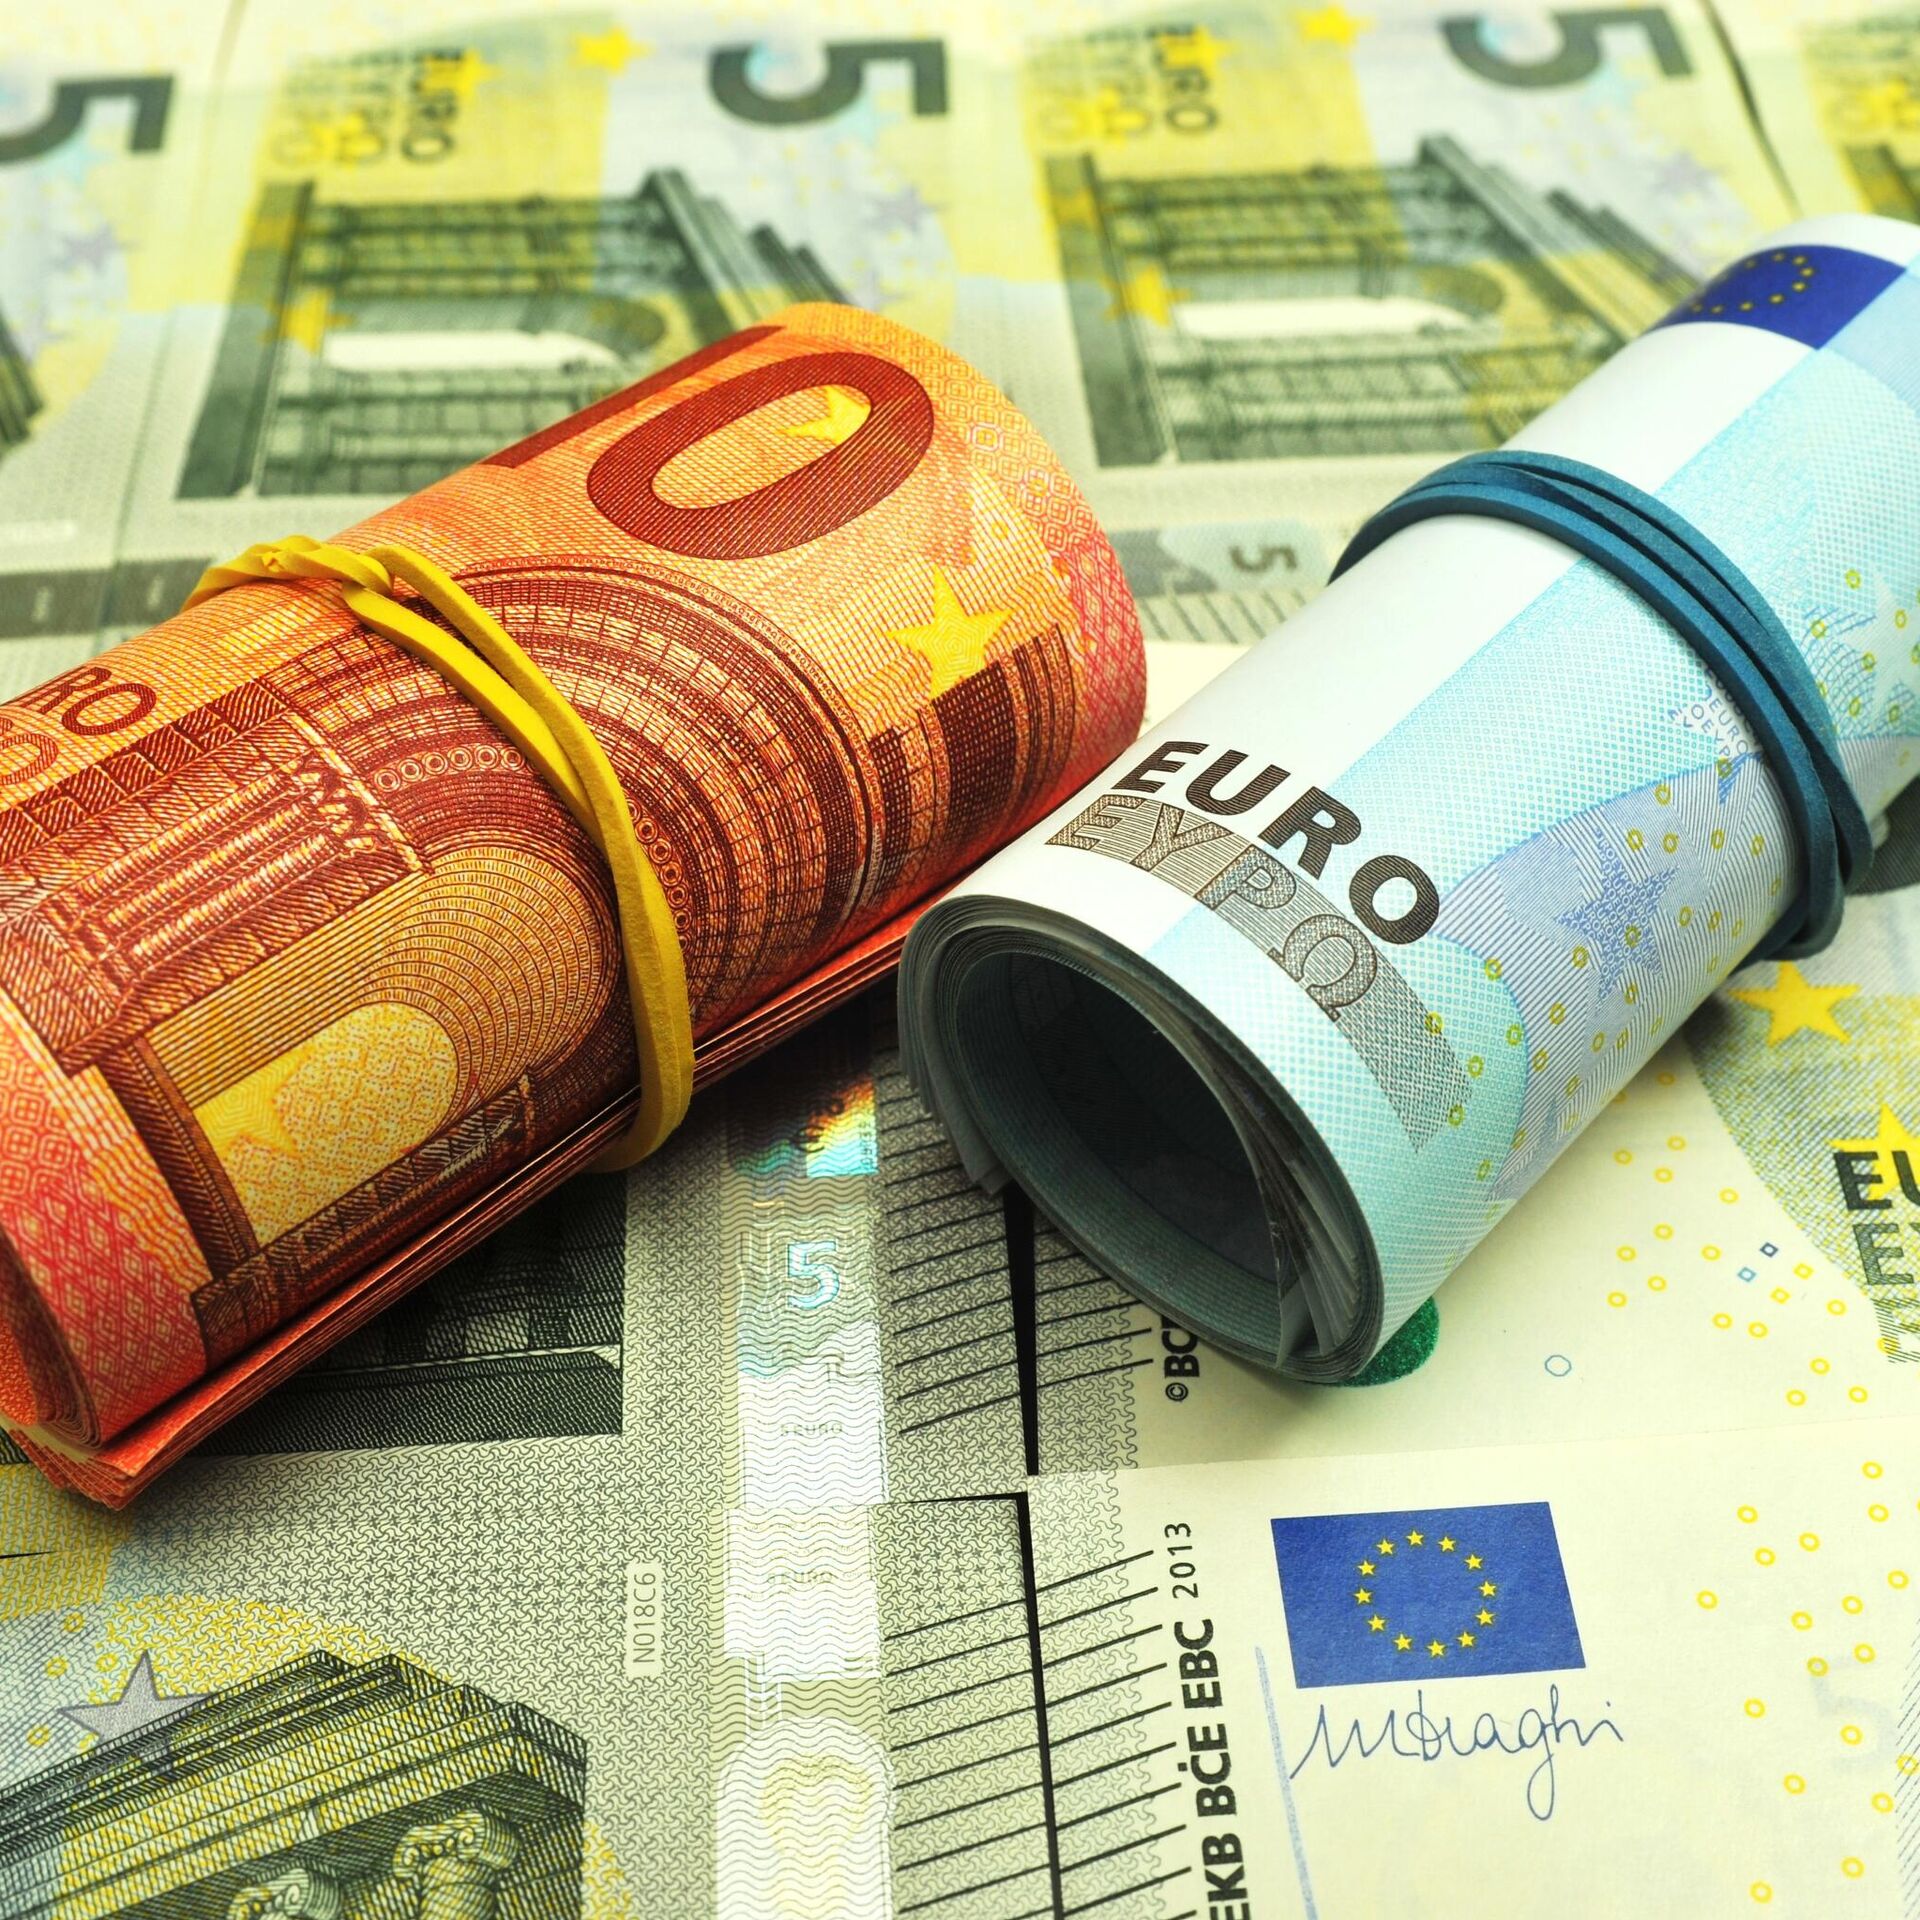 Евро в банках Курска. Чирпон цена на евро. 19 евро сегодня